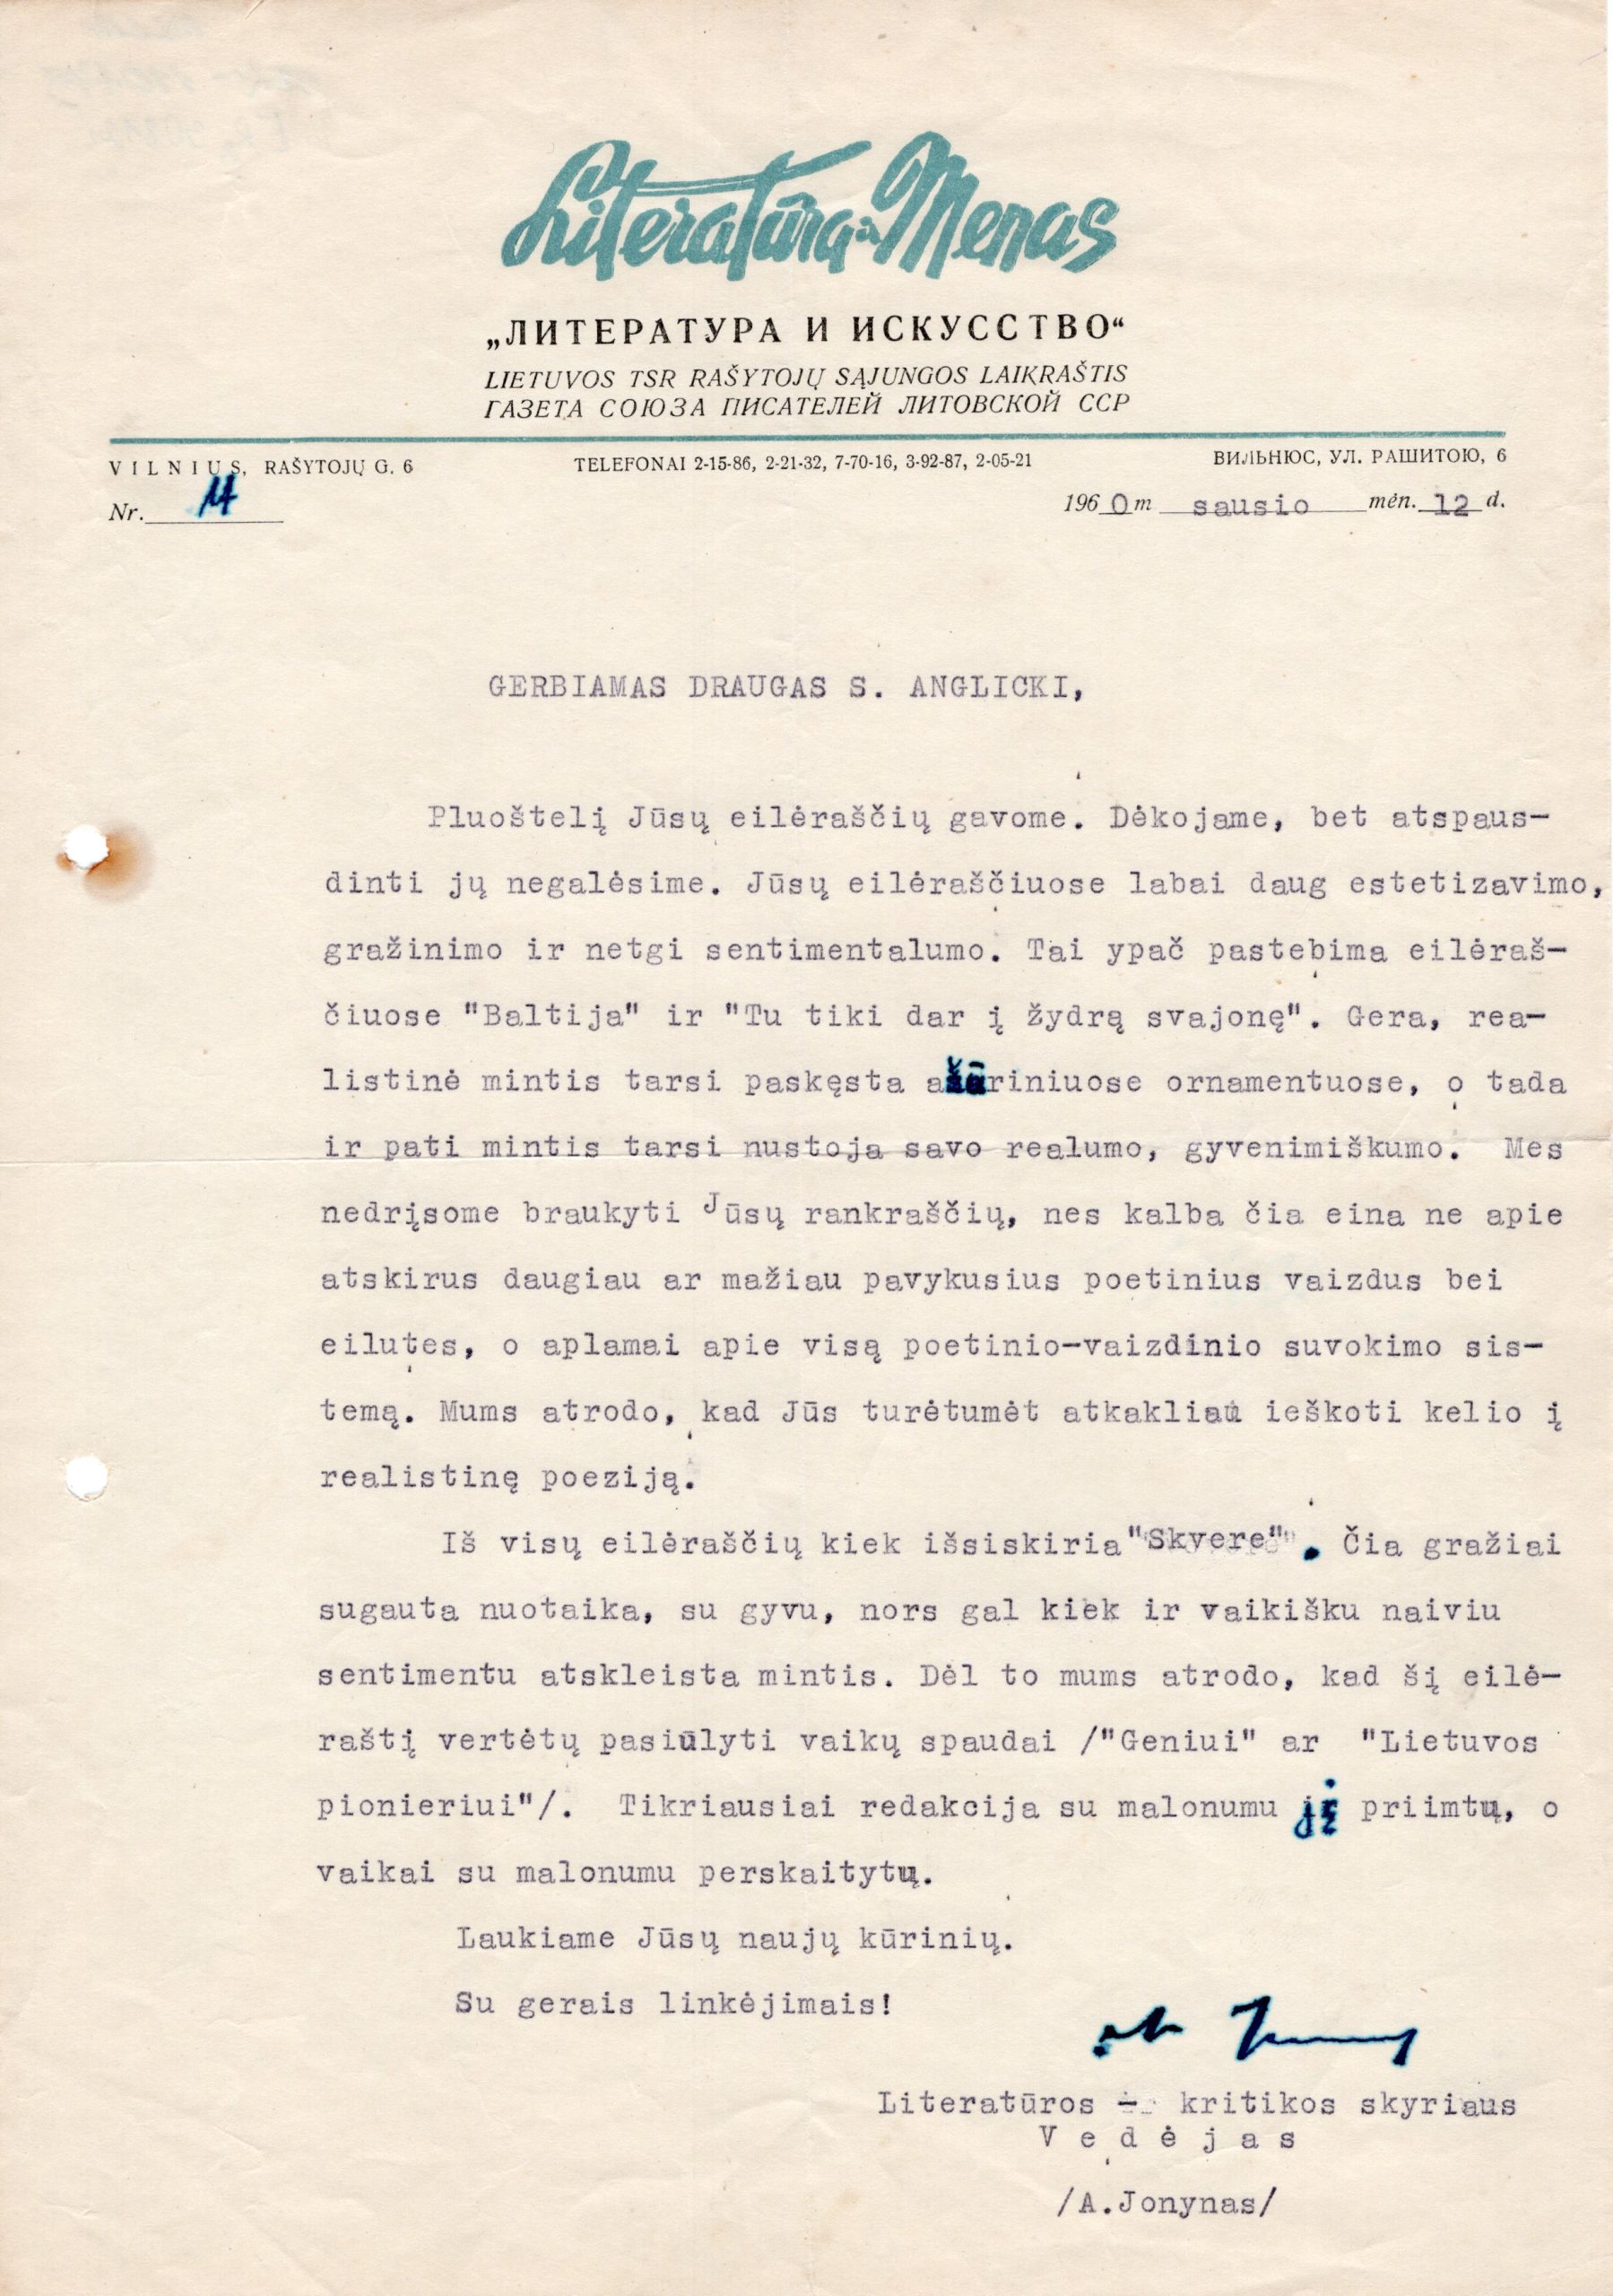 A. Jonyno laiškas S. Anglickiui. Vilnius, 1960 m. sausio 12 d. MLLM GEK 110479